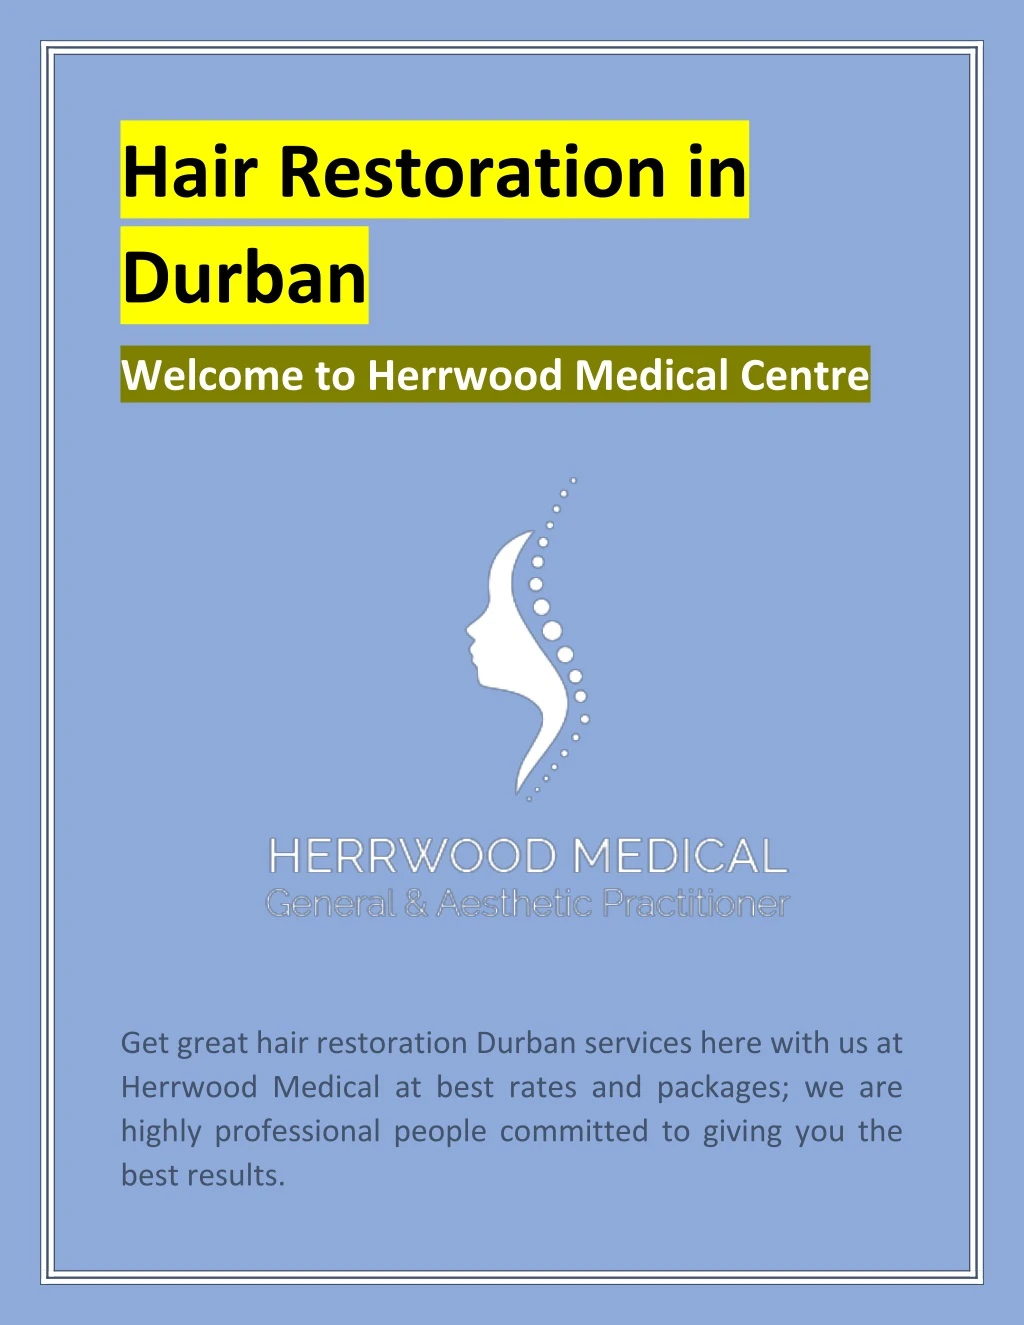 hair restoration in durban